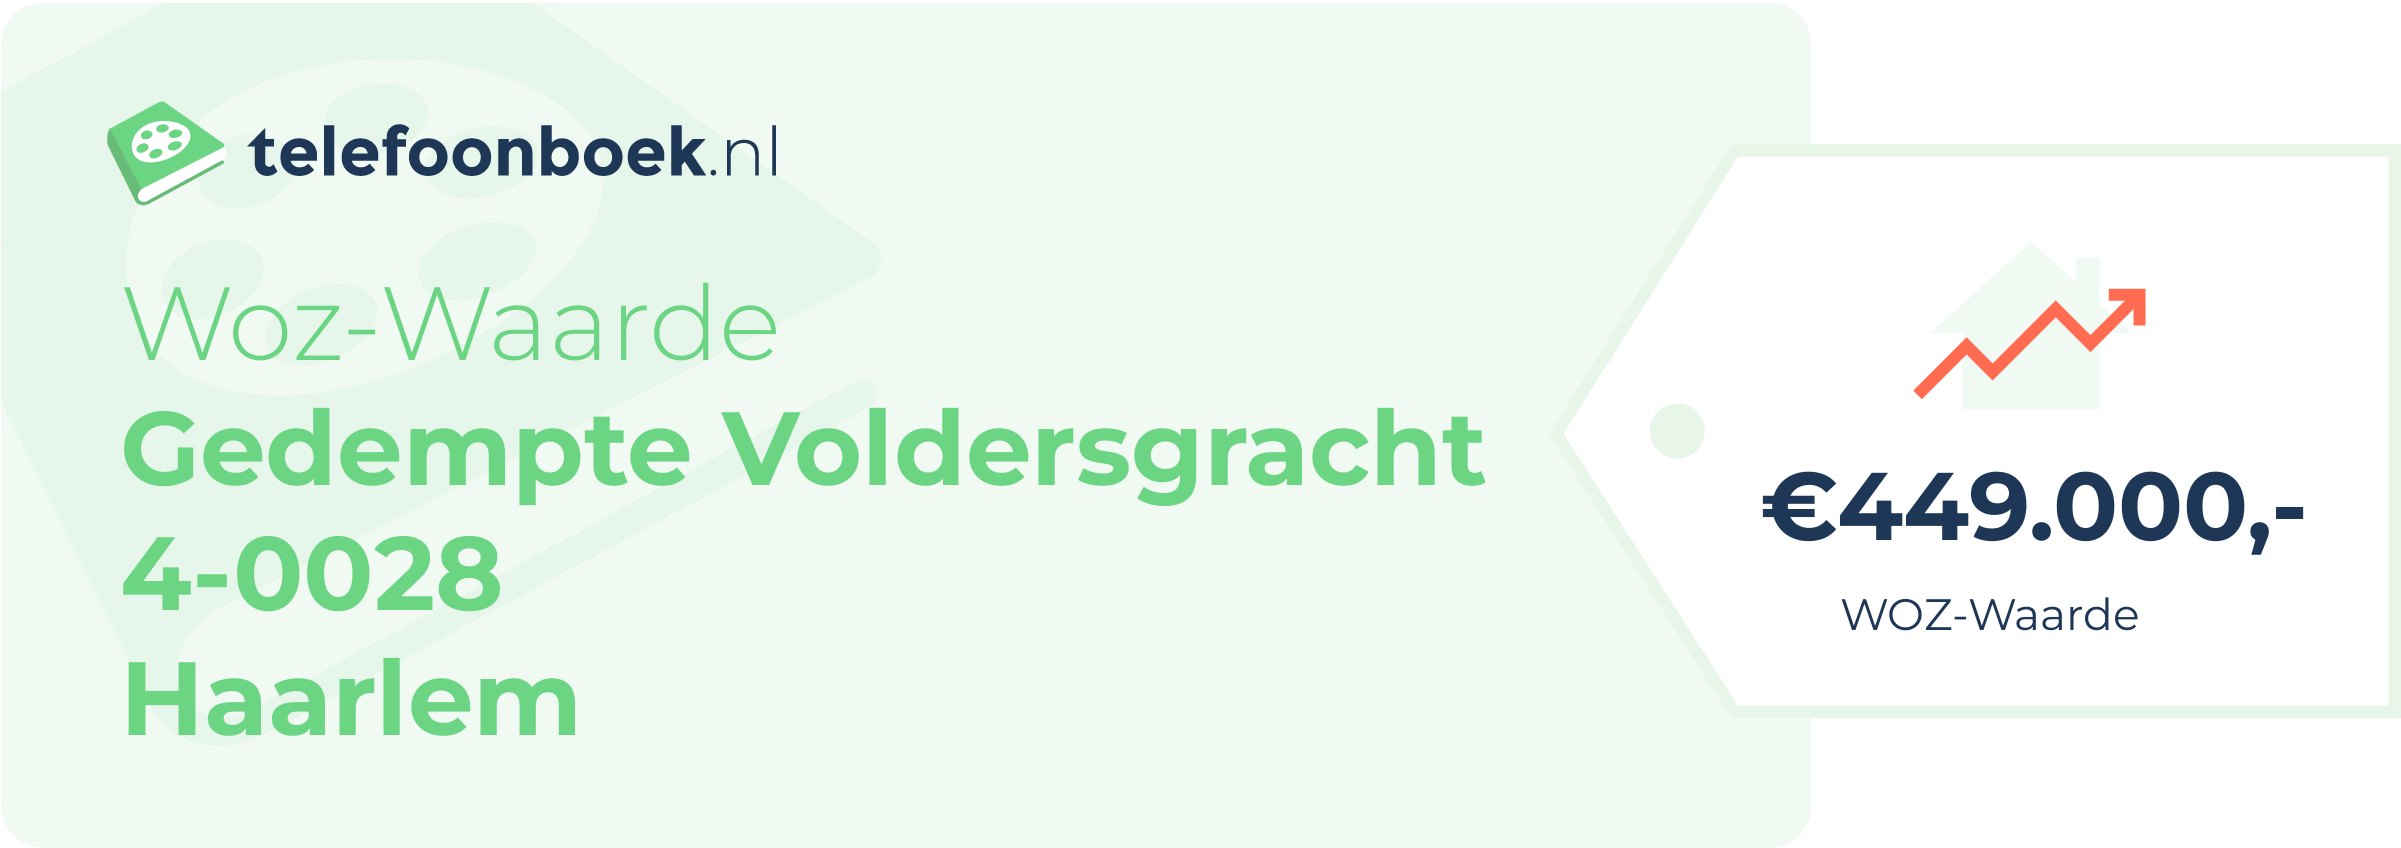 WOZ-waarde Gedempte Voldersgracht 4-0028 Haarlem